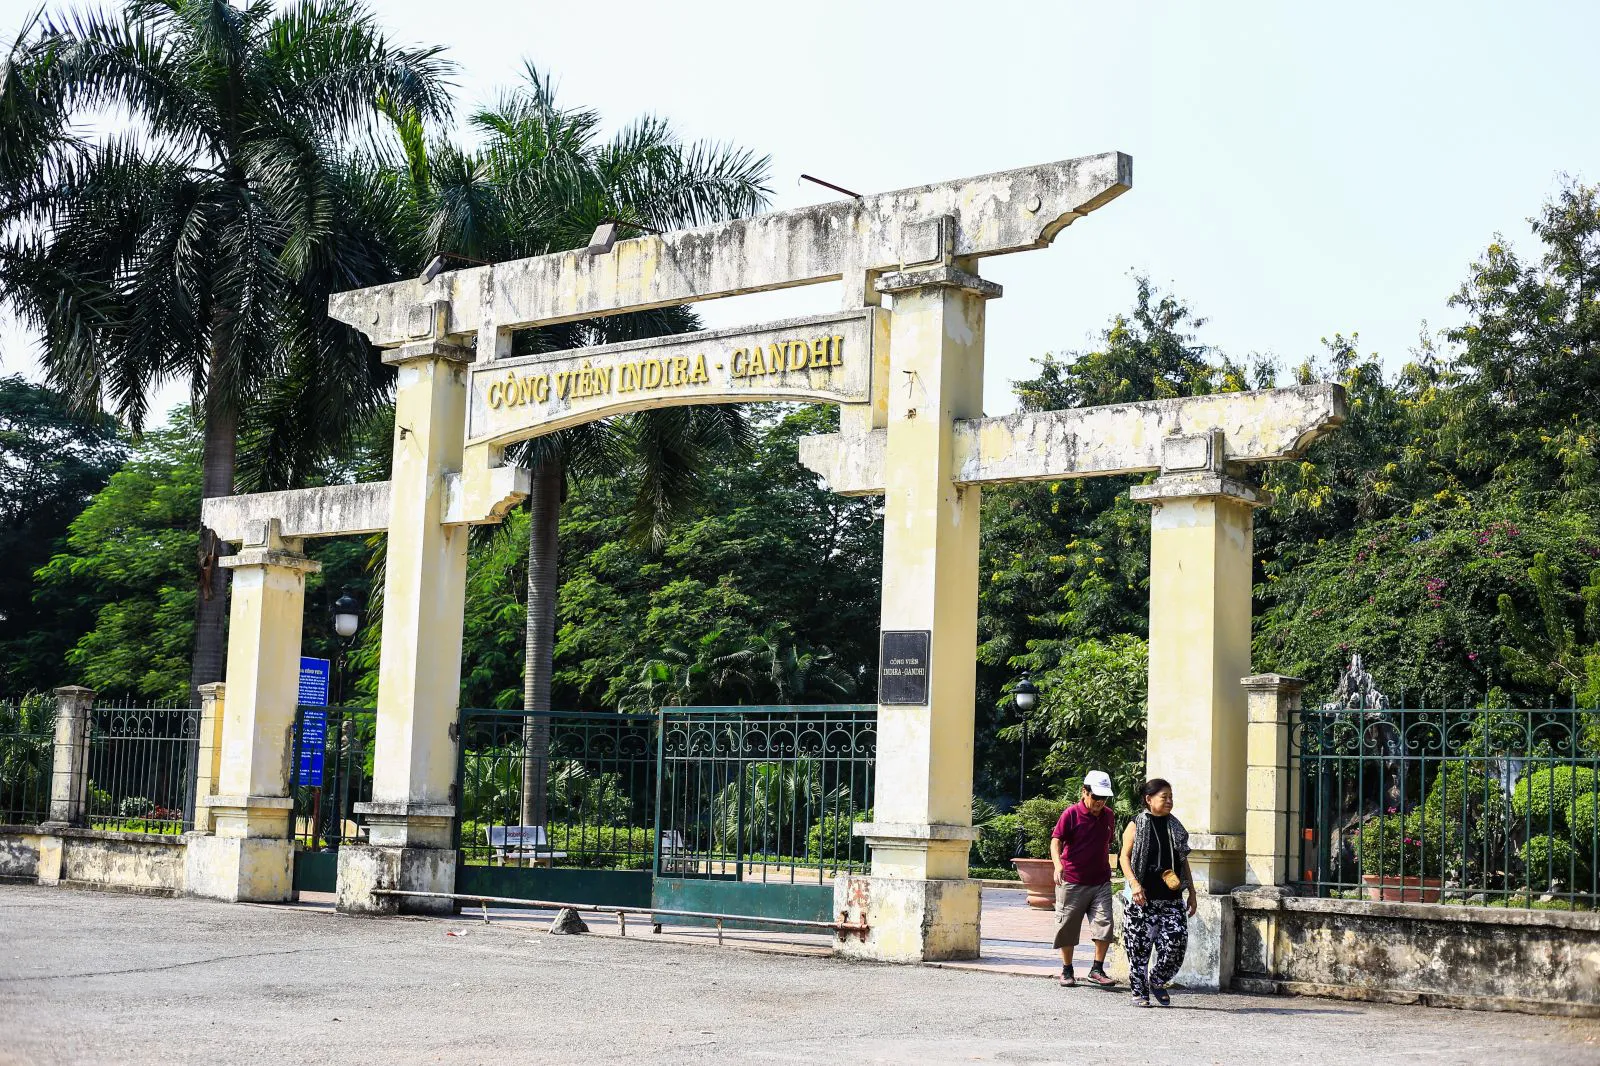 công viên Indira Gandhi (Quận Ba Đình) đang có dấu hiệu xuống cấp trầm trọng.